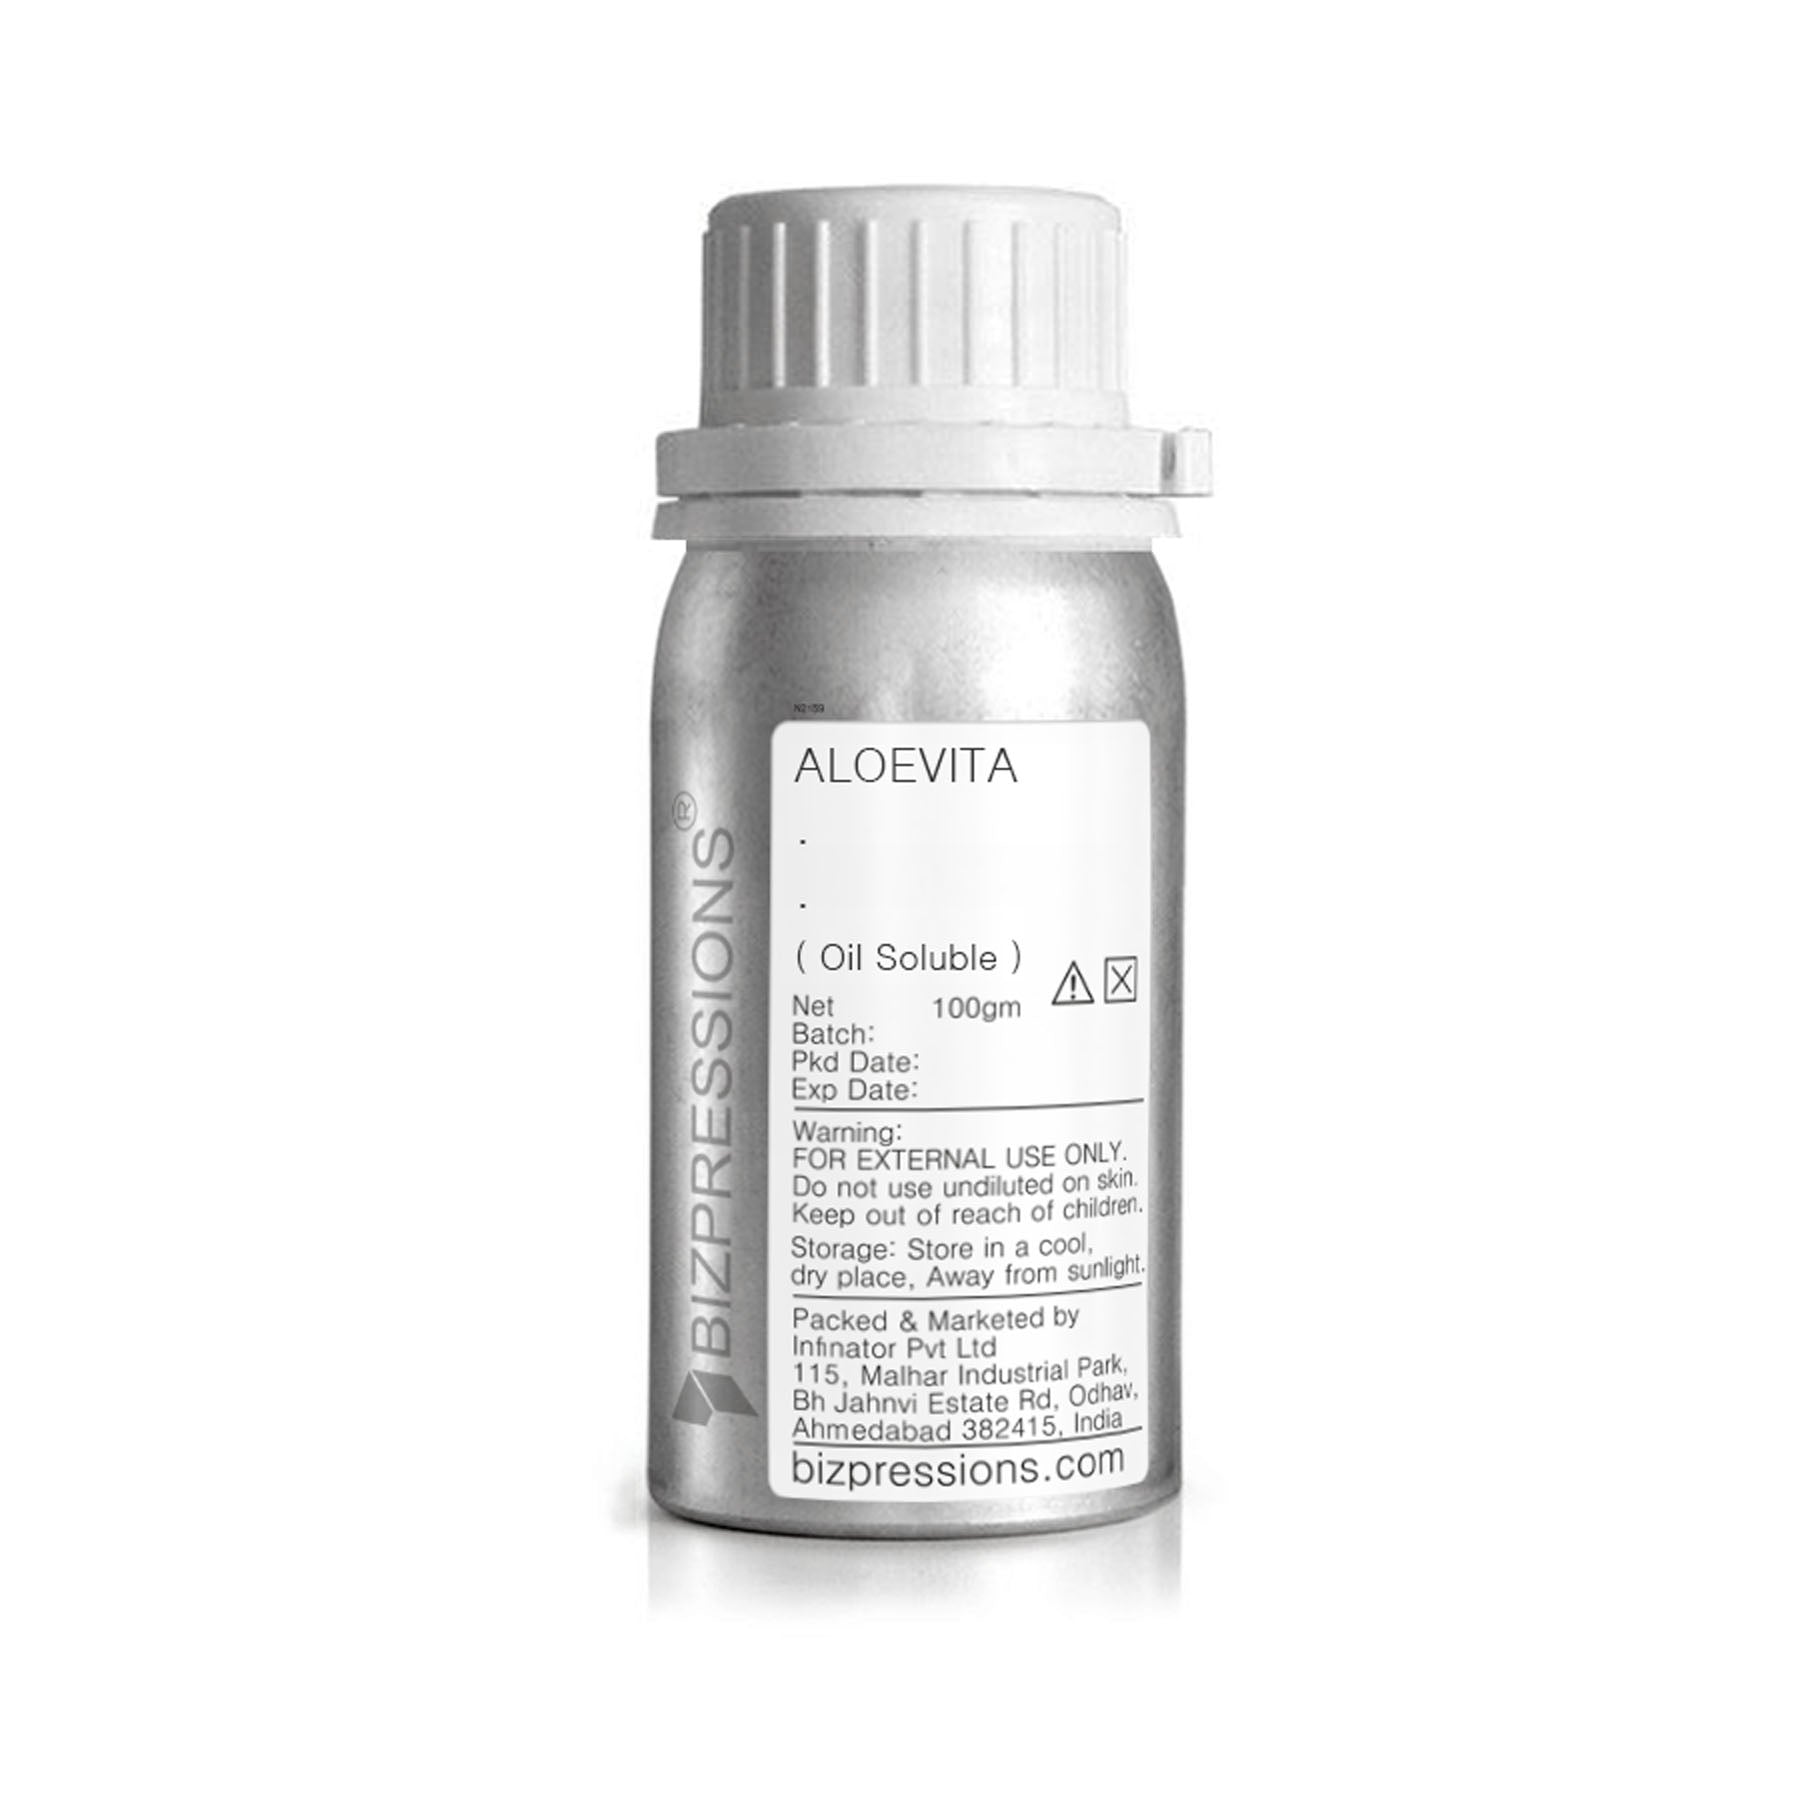 ALOEVITA - Fragrance ( Oil Soluble ) - 100 gm